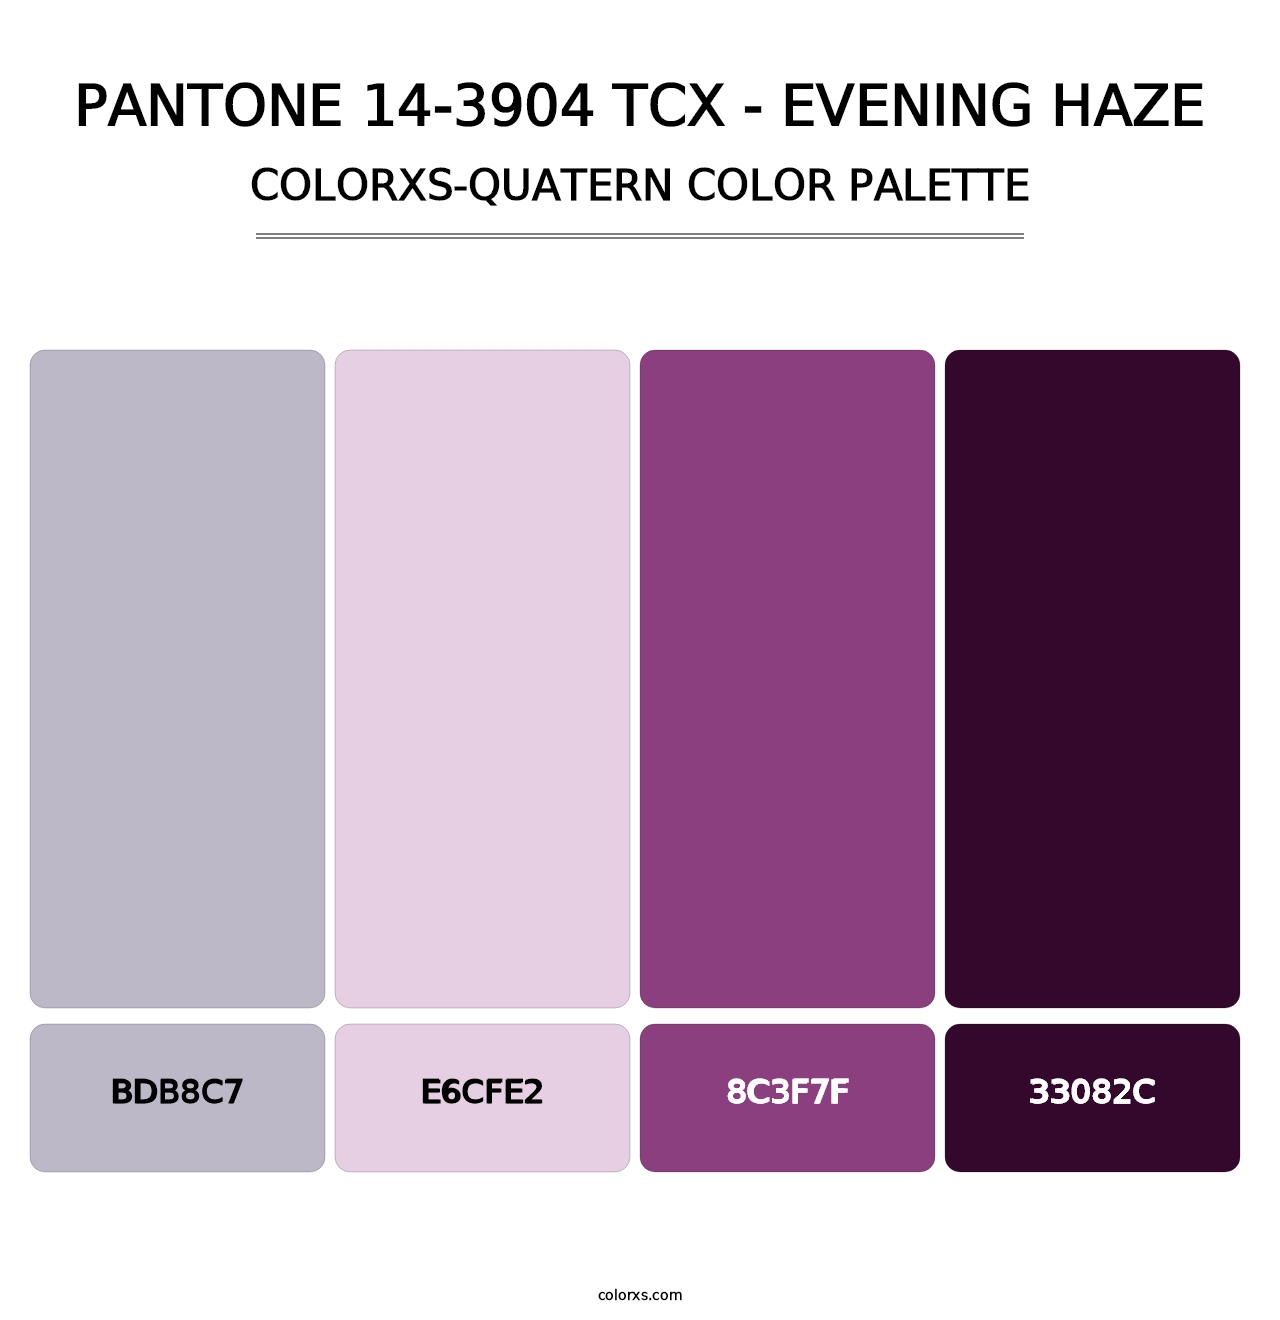 PANTONE 14-3904 TCX - Evening Haze - Colorxs Quatern Palette